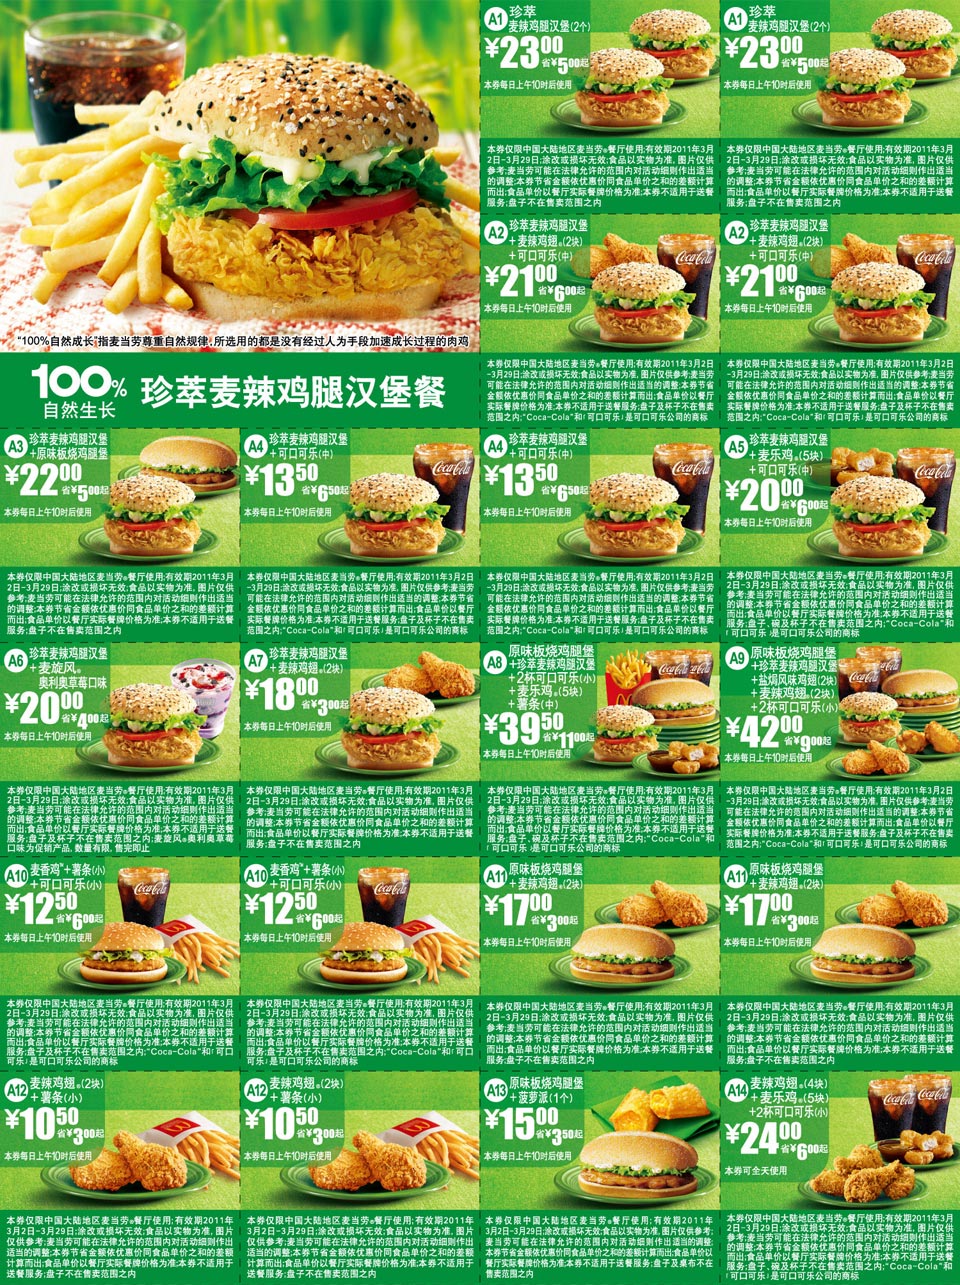 麦当劳100%自然生长珍萃麦辣鸡腿汉堡餐优惠券2011年3月整张打印版本 有效期至：2011年3月29日 www.5ikfc.com